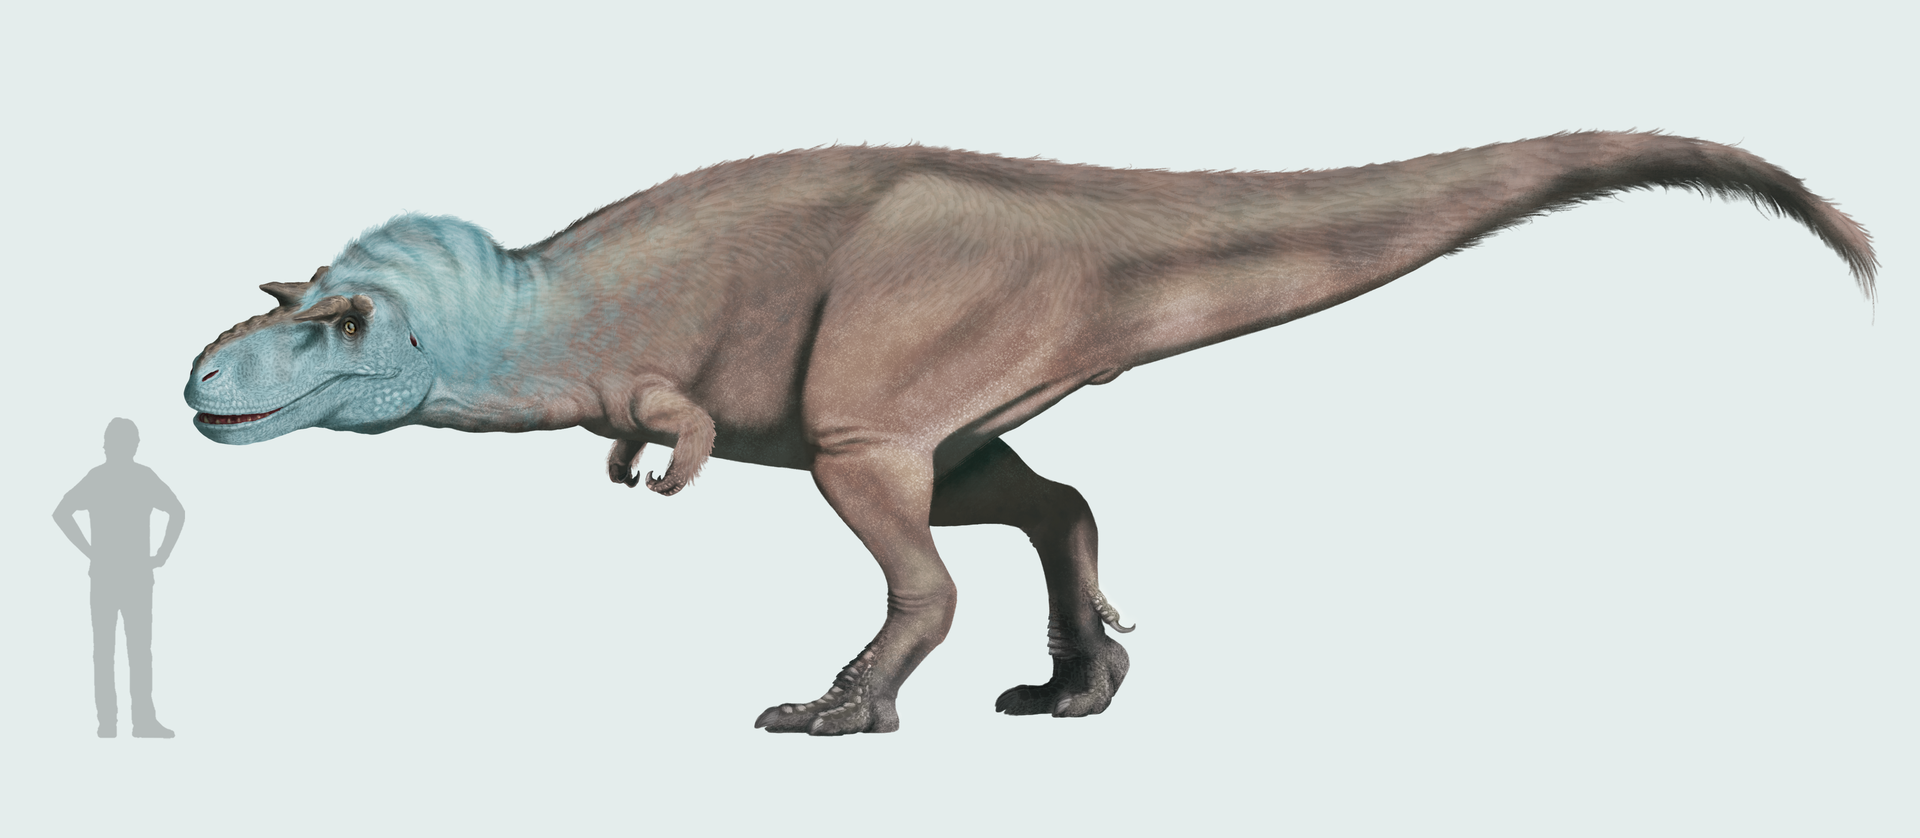 Nejpravděpodobnějším původcem „deinodontích“ zubů je velký albertosaurinní tyranosaurid Gorgosaurus libratus. Tento až 9 metrů dlouhý a 3 tuny vážící teropod žil v době před 77 až 75 miliony let na území dnešní kanadské Alberty a americké montany. Kr